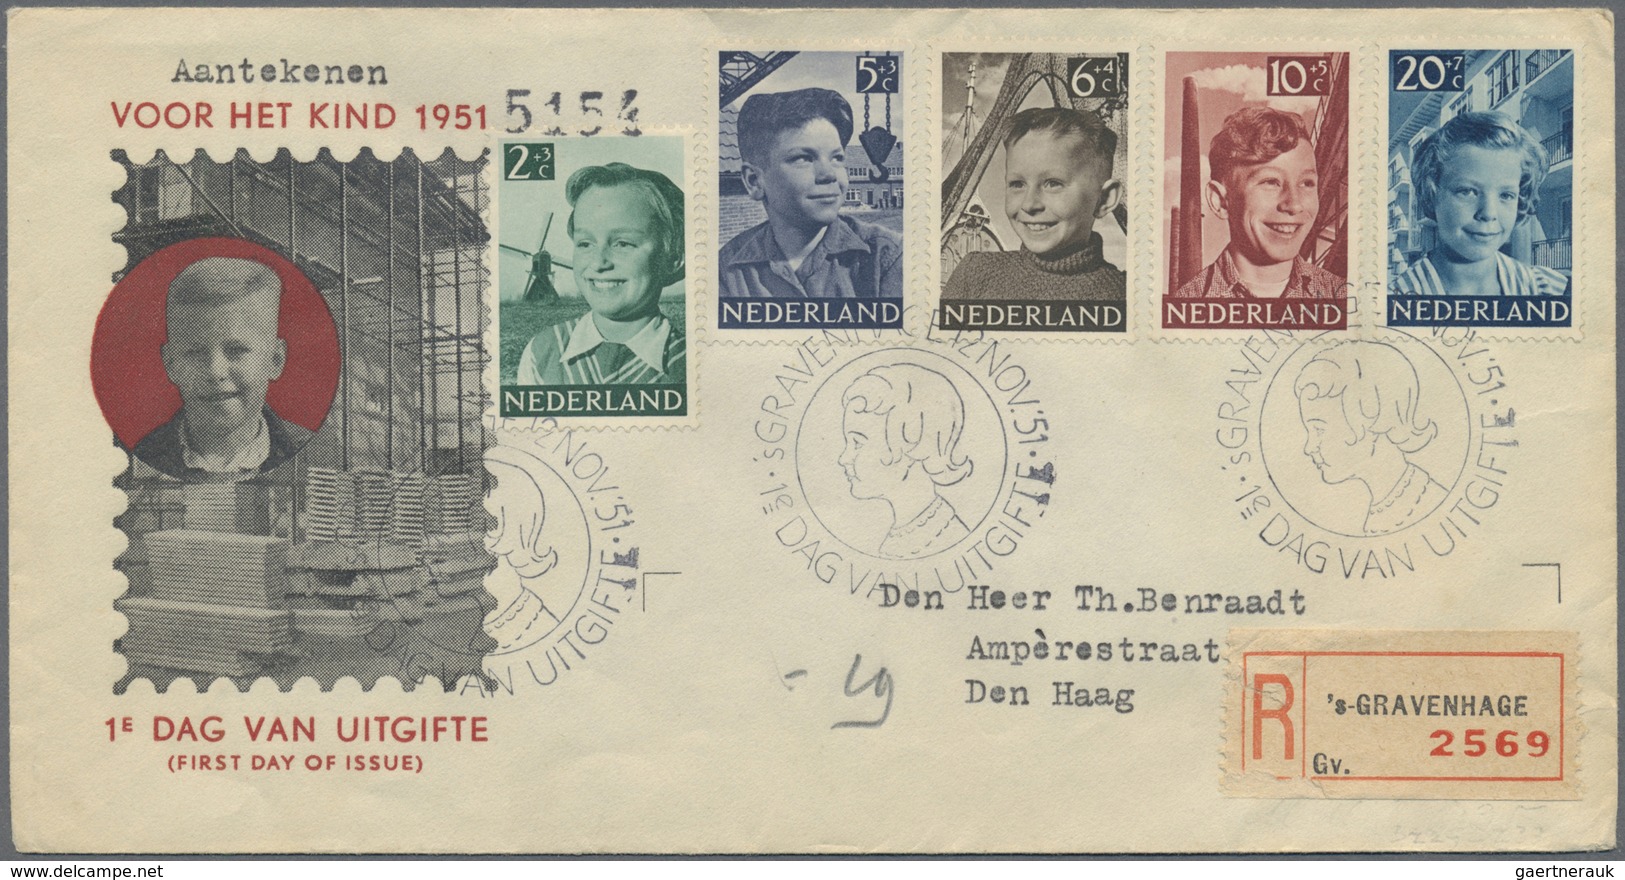 Br Niederlande: 1940/1963, Posten mit Schwerpunkt bei den Schmuck-FDC (wenig andere Post) mit ca. 200 B